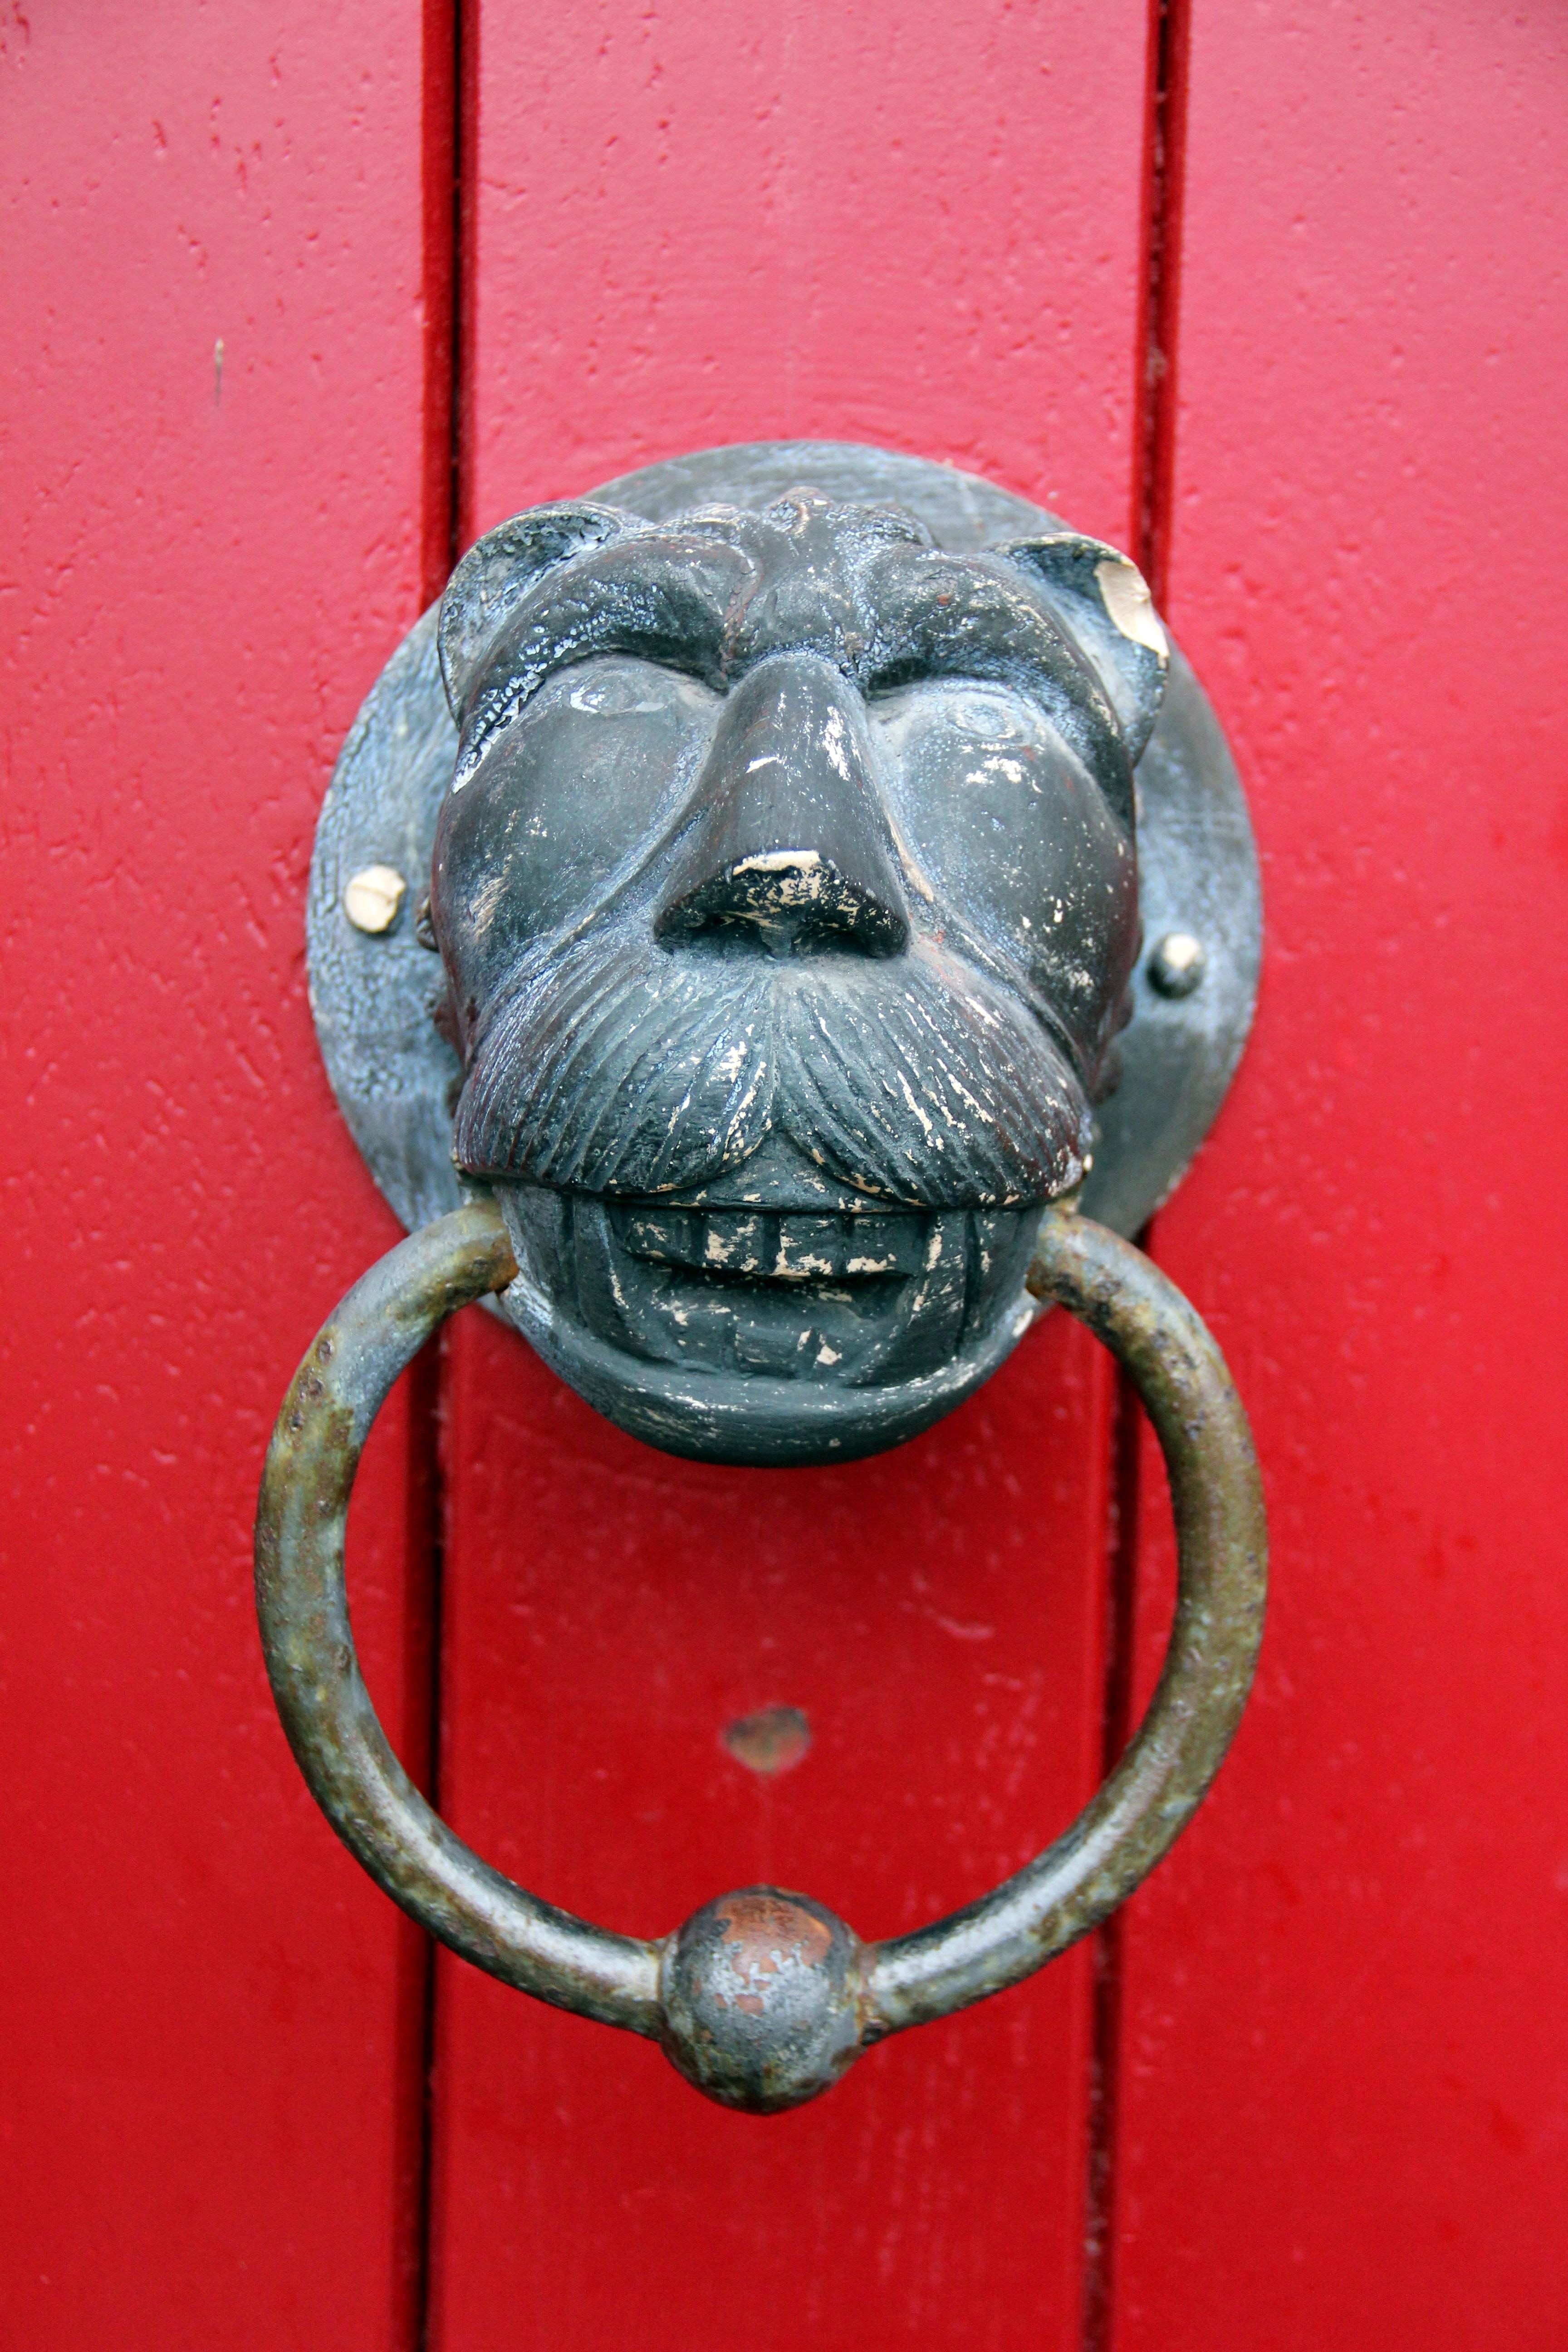 Lion, Lion Head, Doorknocker, Ring, Red, red, door knocker